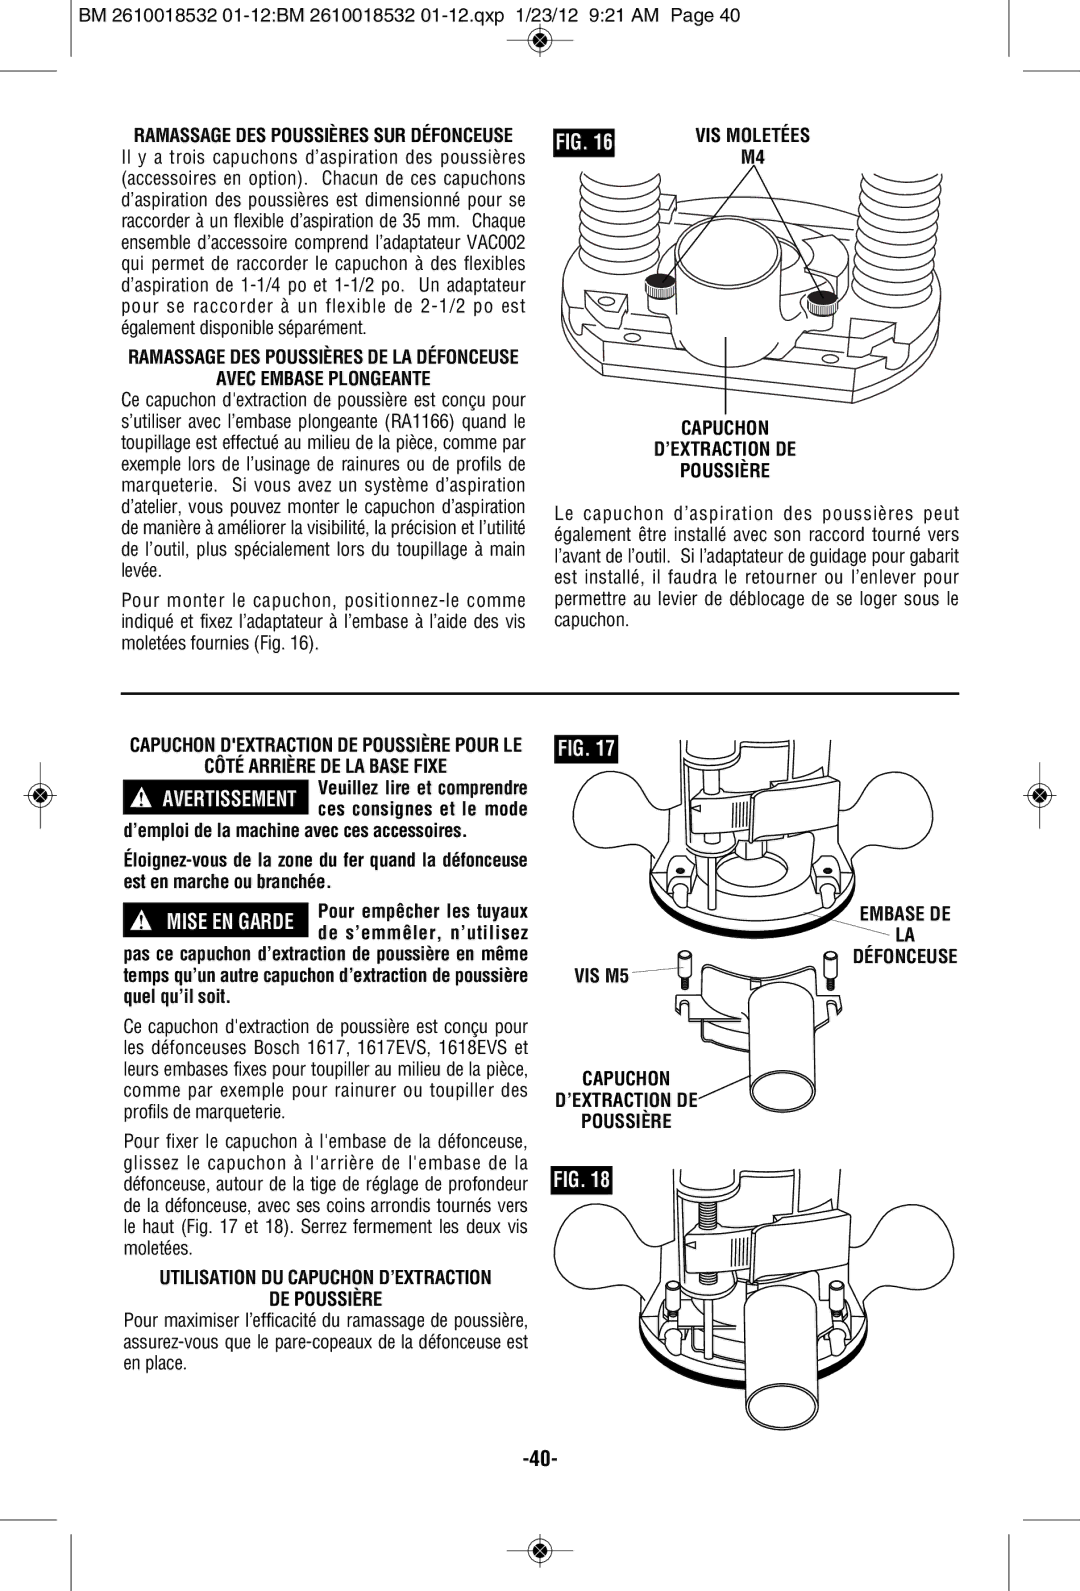 Bosch Power Tools 16186, 1617 manual Avec Embase Plongeante, Capuchon ’EXTRACTION DE Poussière, Embase DE Défonceuse, VIS M5 